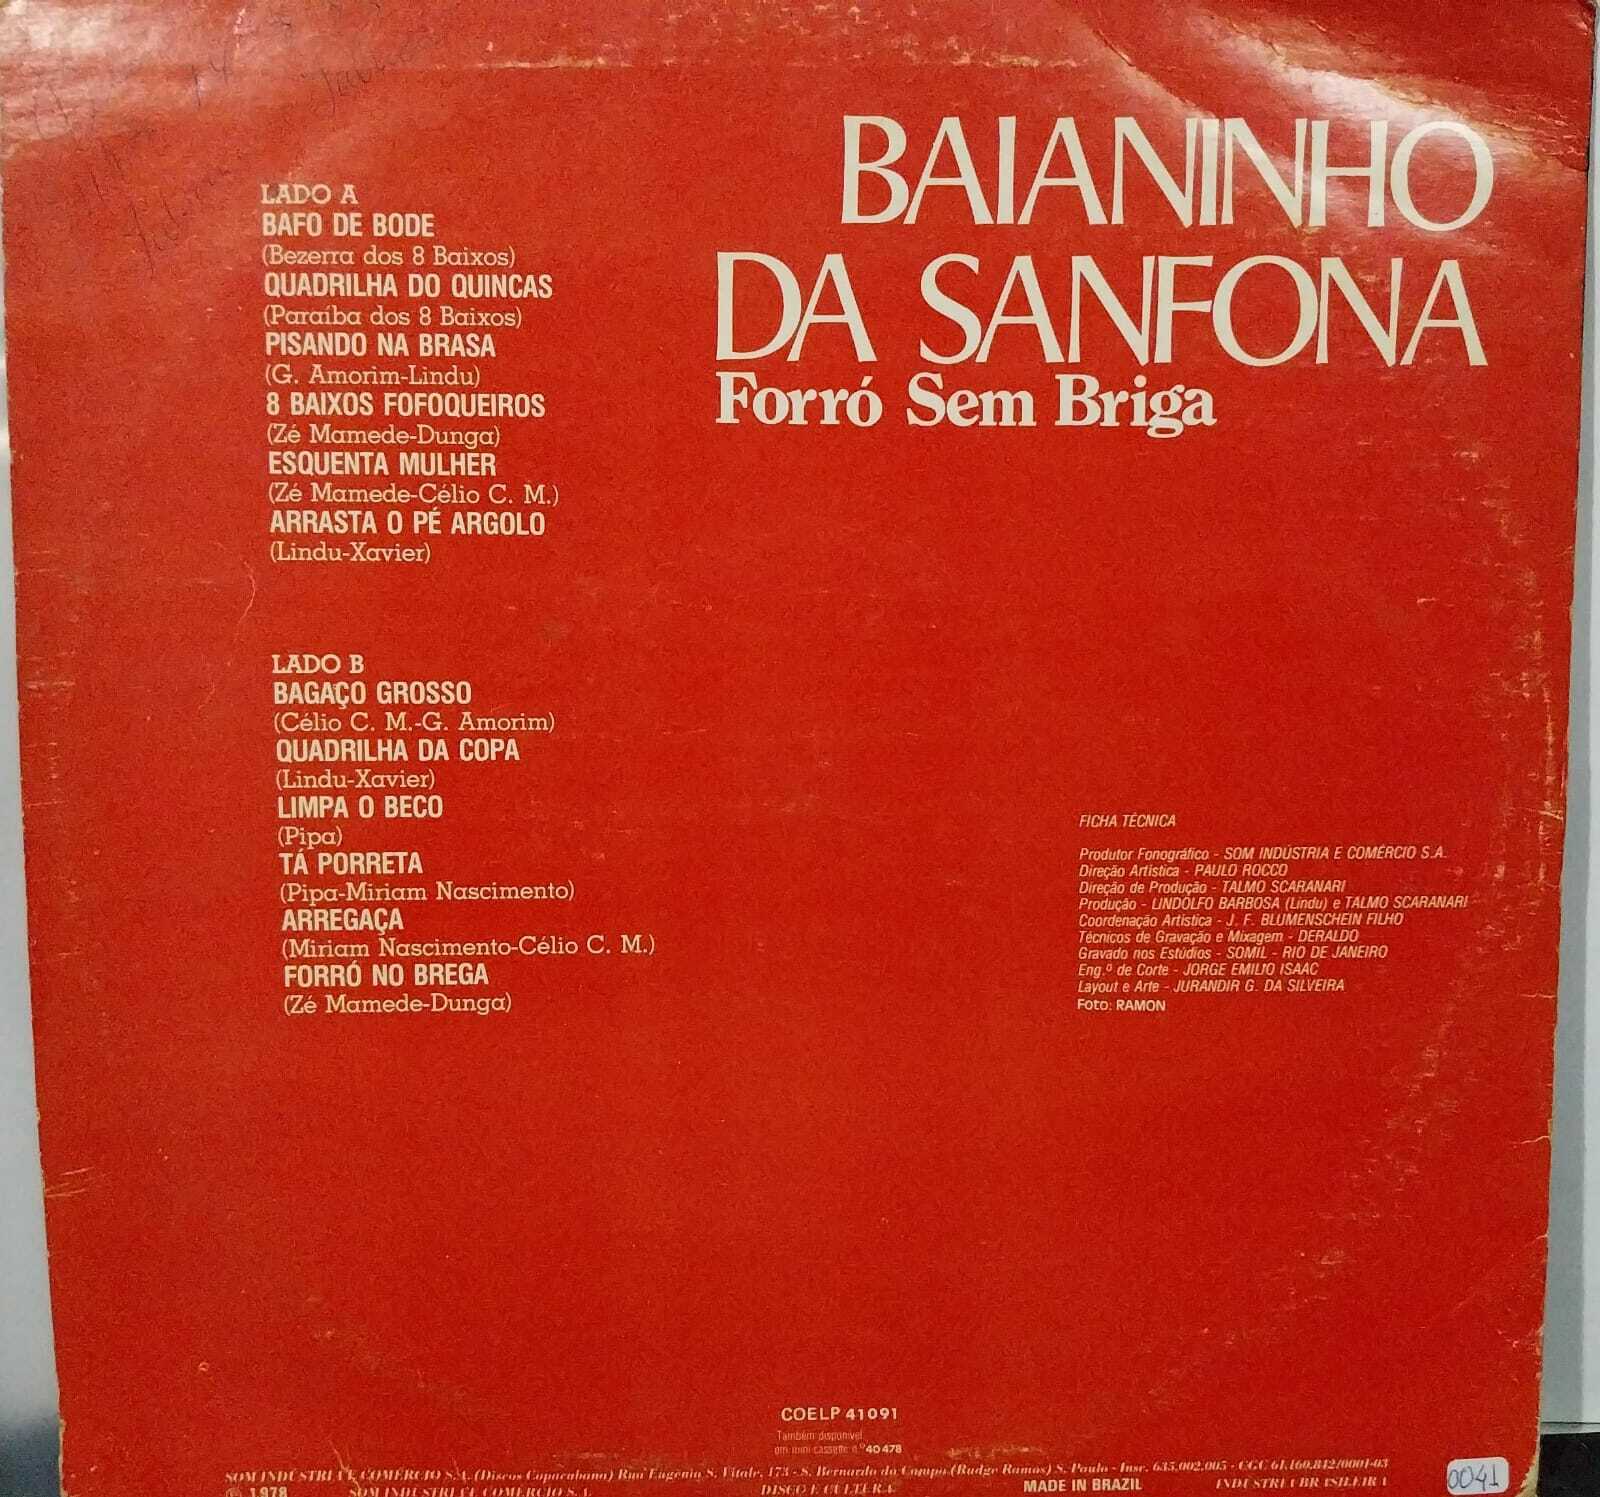 Vinil - Baianinho da Sanfona - Forró sem Briga Vol 2